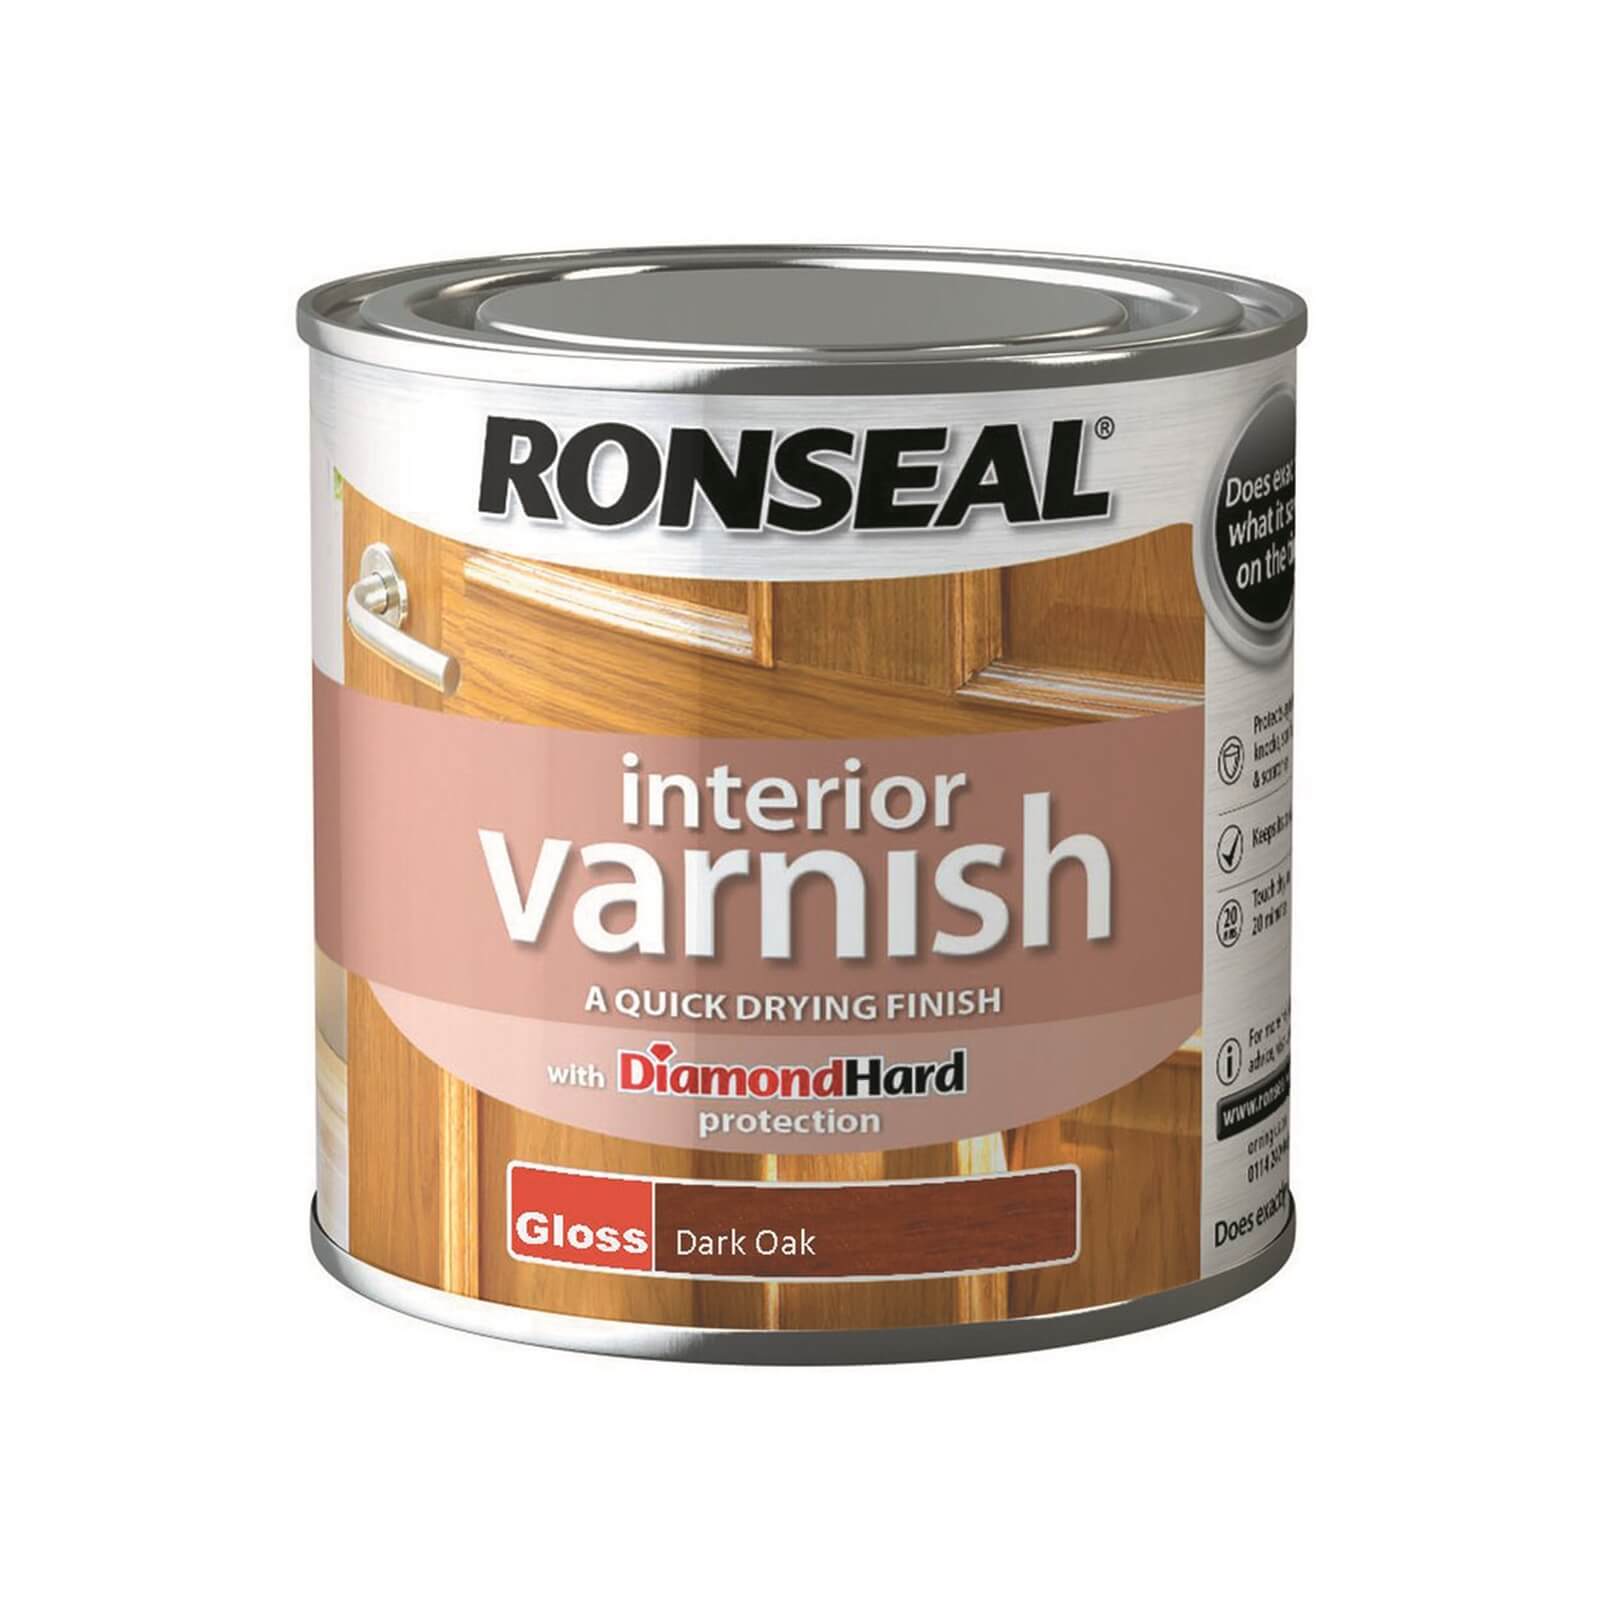 Ronseal Interior Varnish Gloss Dark Oak - 250ml